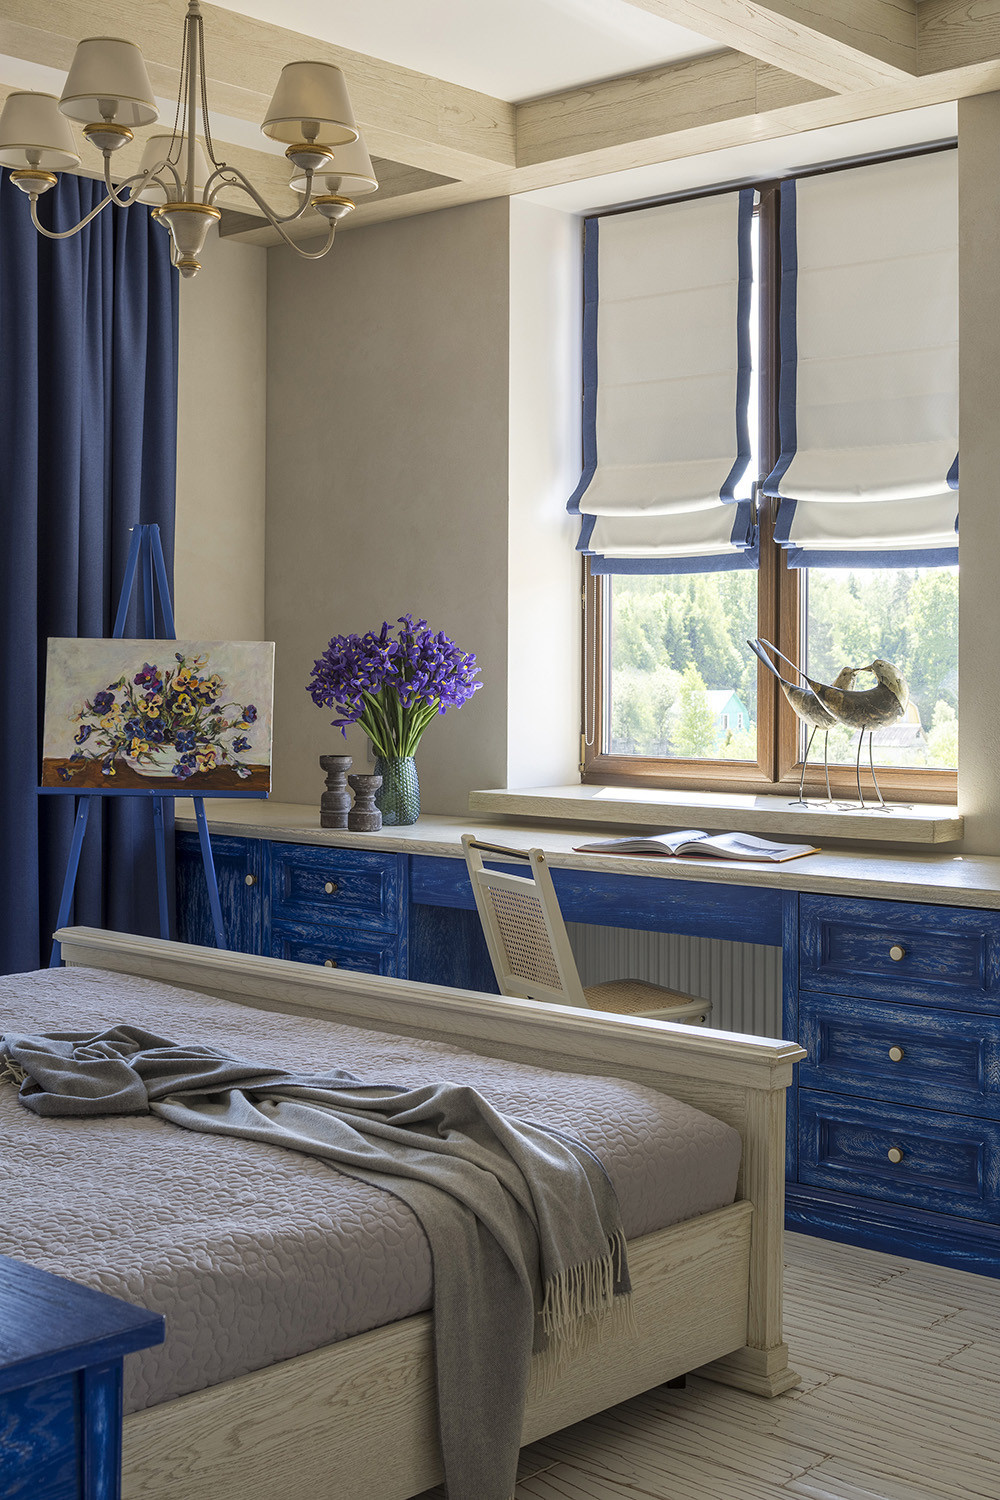 Ngôi nhà nằm tại vùng ngoại ô do Apelsin Design Studio thiết kế mang hơi hướng phong cách Địa Trung Hải. Góc làm việc với chiếc bàn cạnh cửa sổ sơn màu xanh lam dịu nhẹ, kết hợp rèm cửa Roman có đường viền cùng tone màu đẹp mắt.